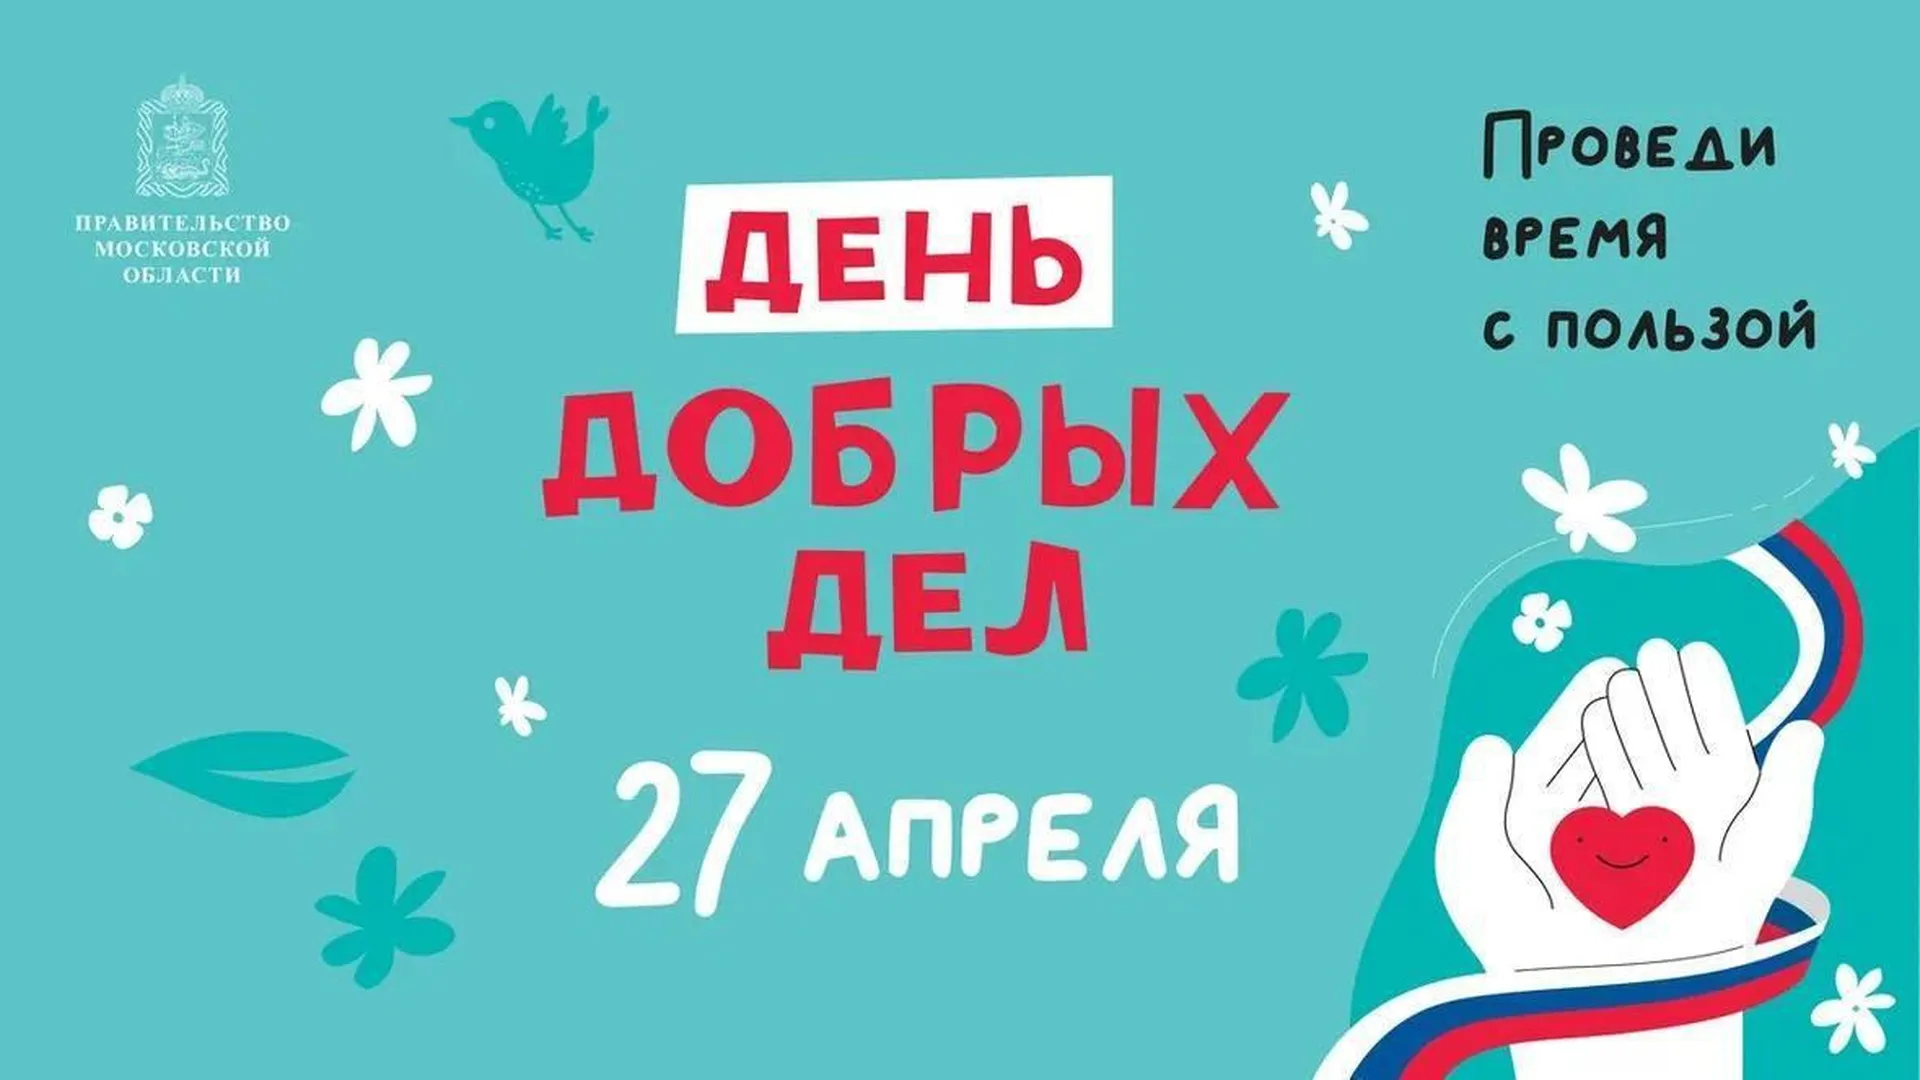 Около 2 тысяч молодых саженцев в рамках акции «День добрых дел» высадят в Красногорске